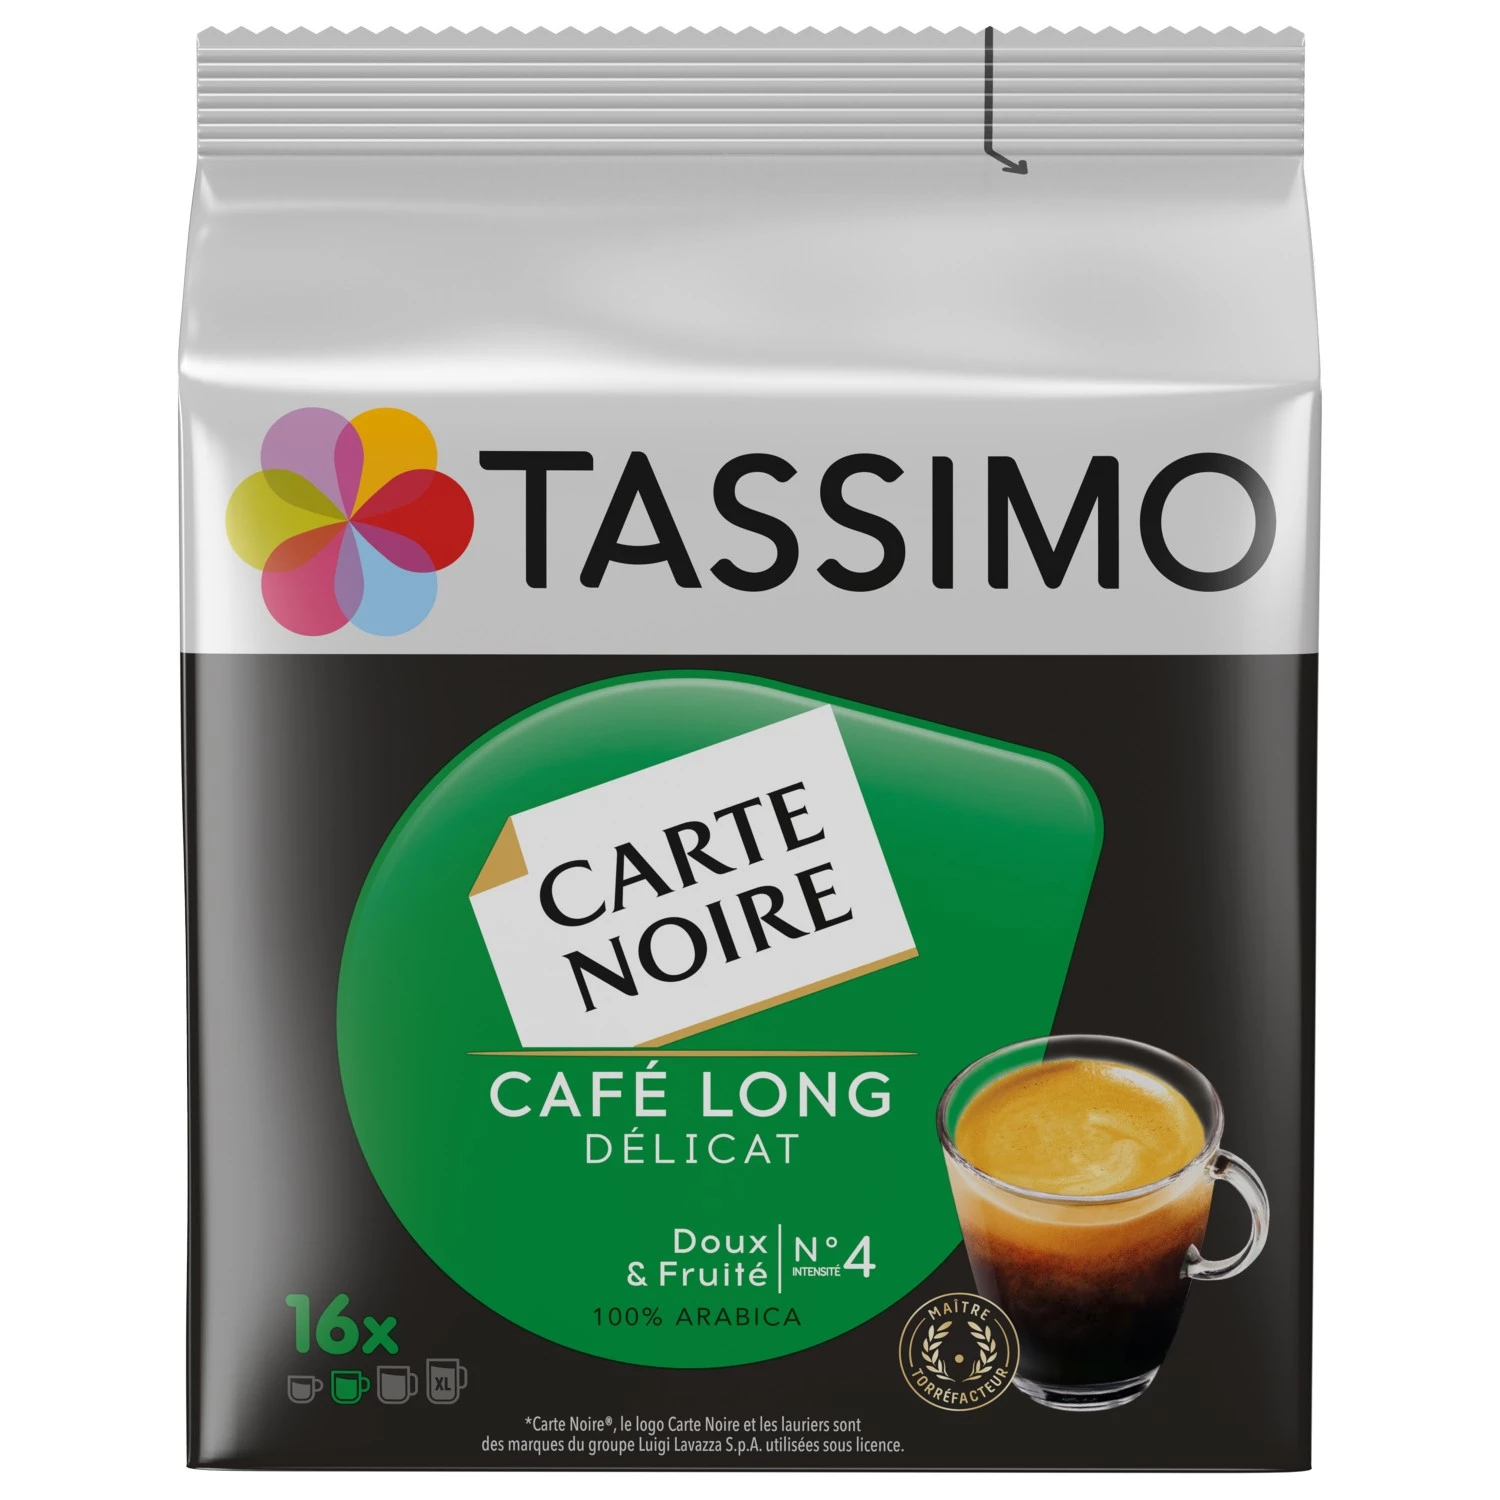 Caffè lungo delicato cartoncino nero n°4 x16 cialde - TASSIMO